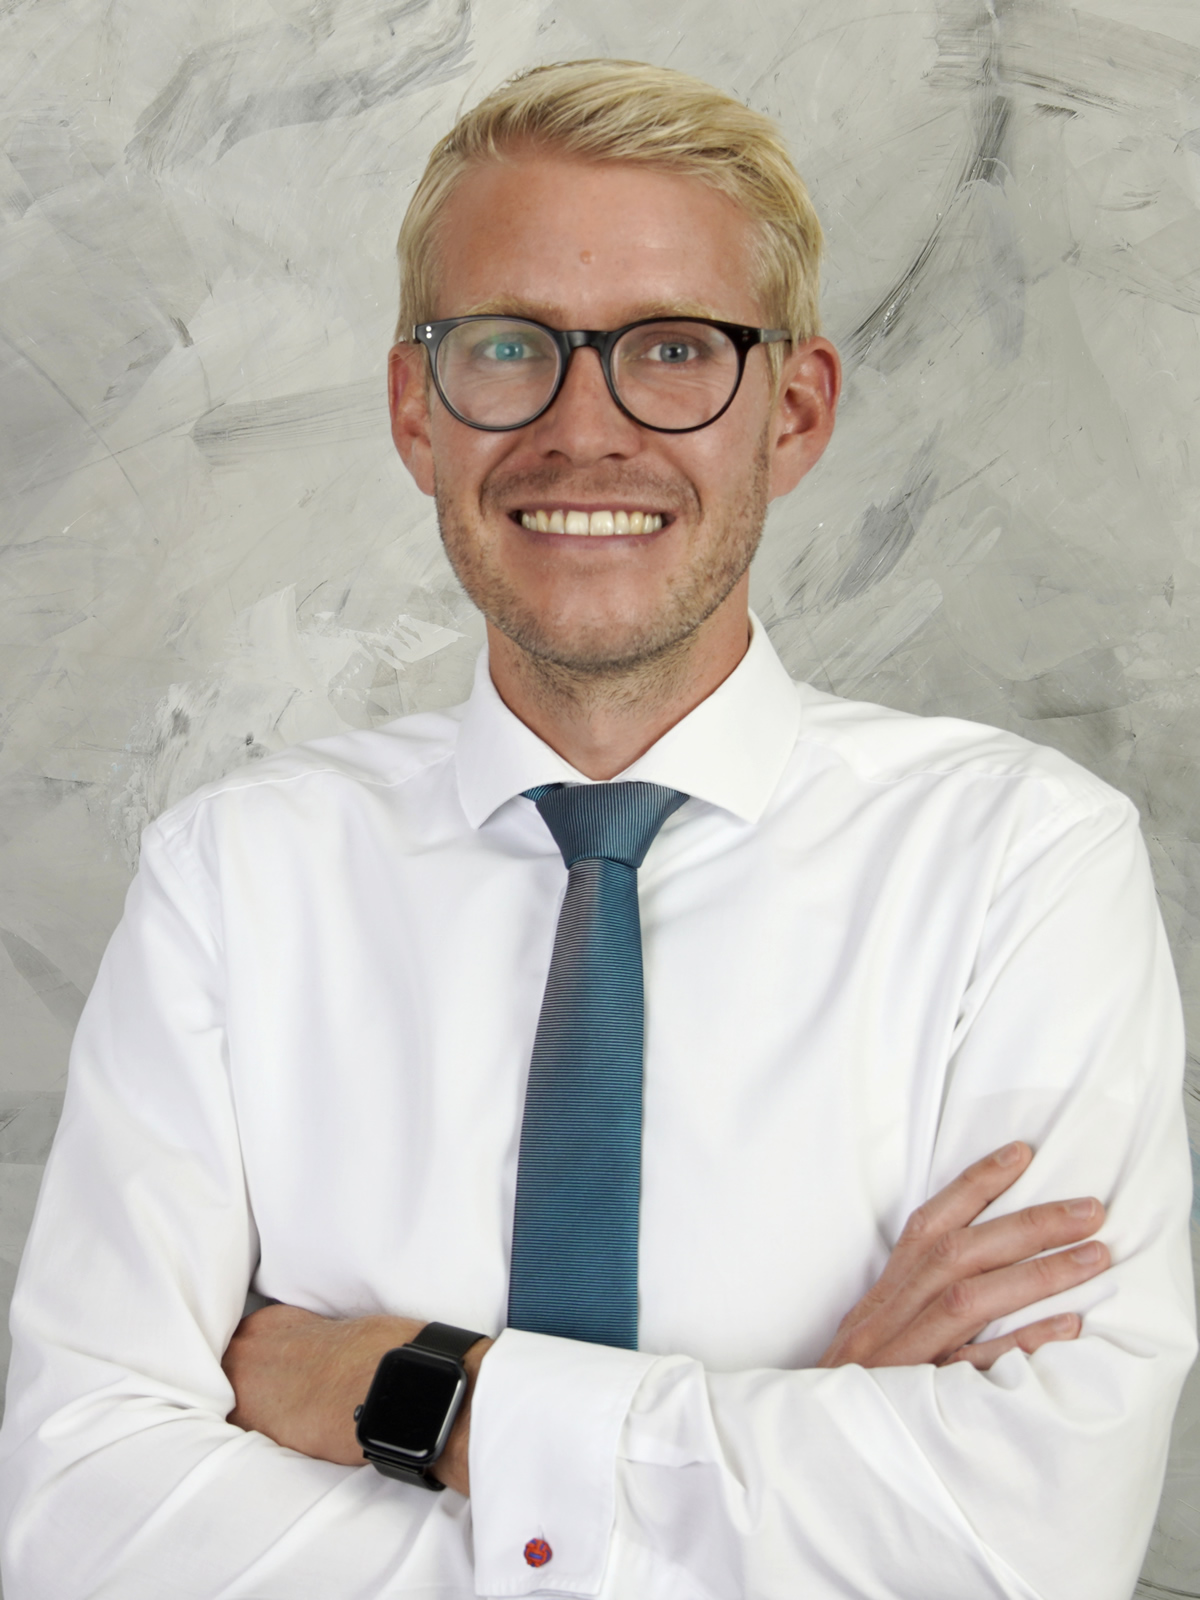 Rechtsanwalt Daum, Fachanwalt für Arbeitsrecht in Karlsruhe und Frankfurt